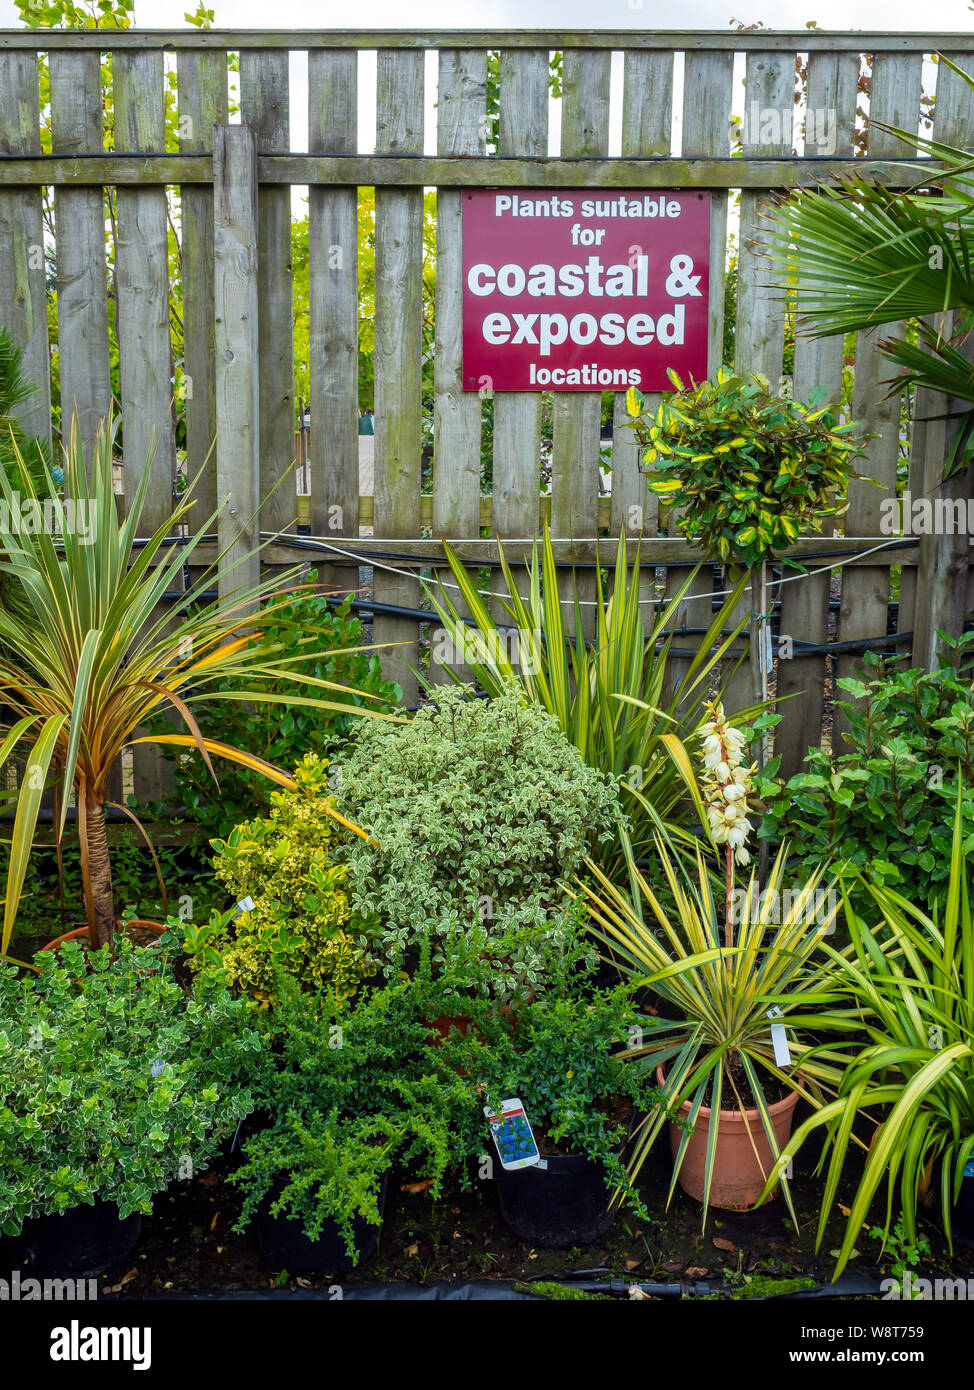 Anzeige von Anlagen geeignet für Küsten- und exponierten Standorten in einem Gartencenter in North Yorkshire Stockfoto